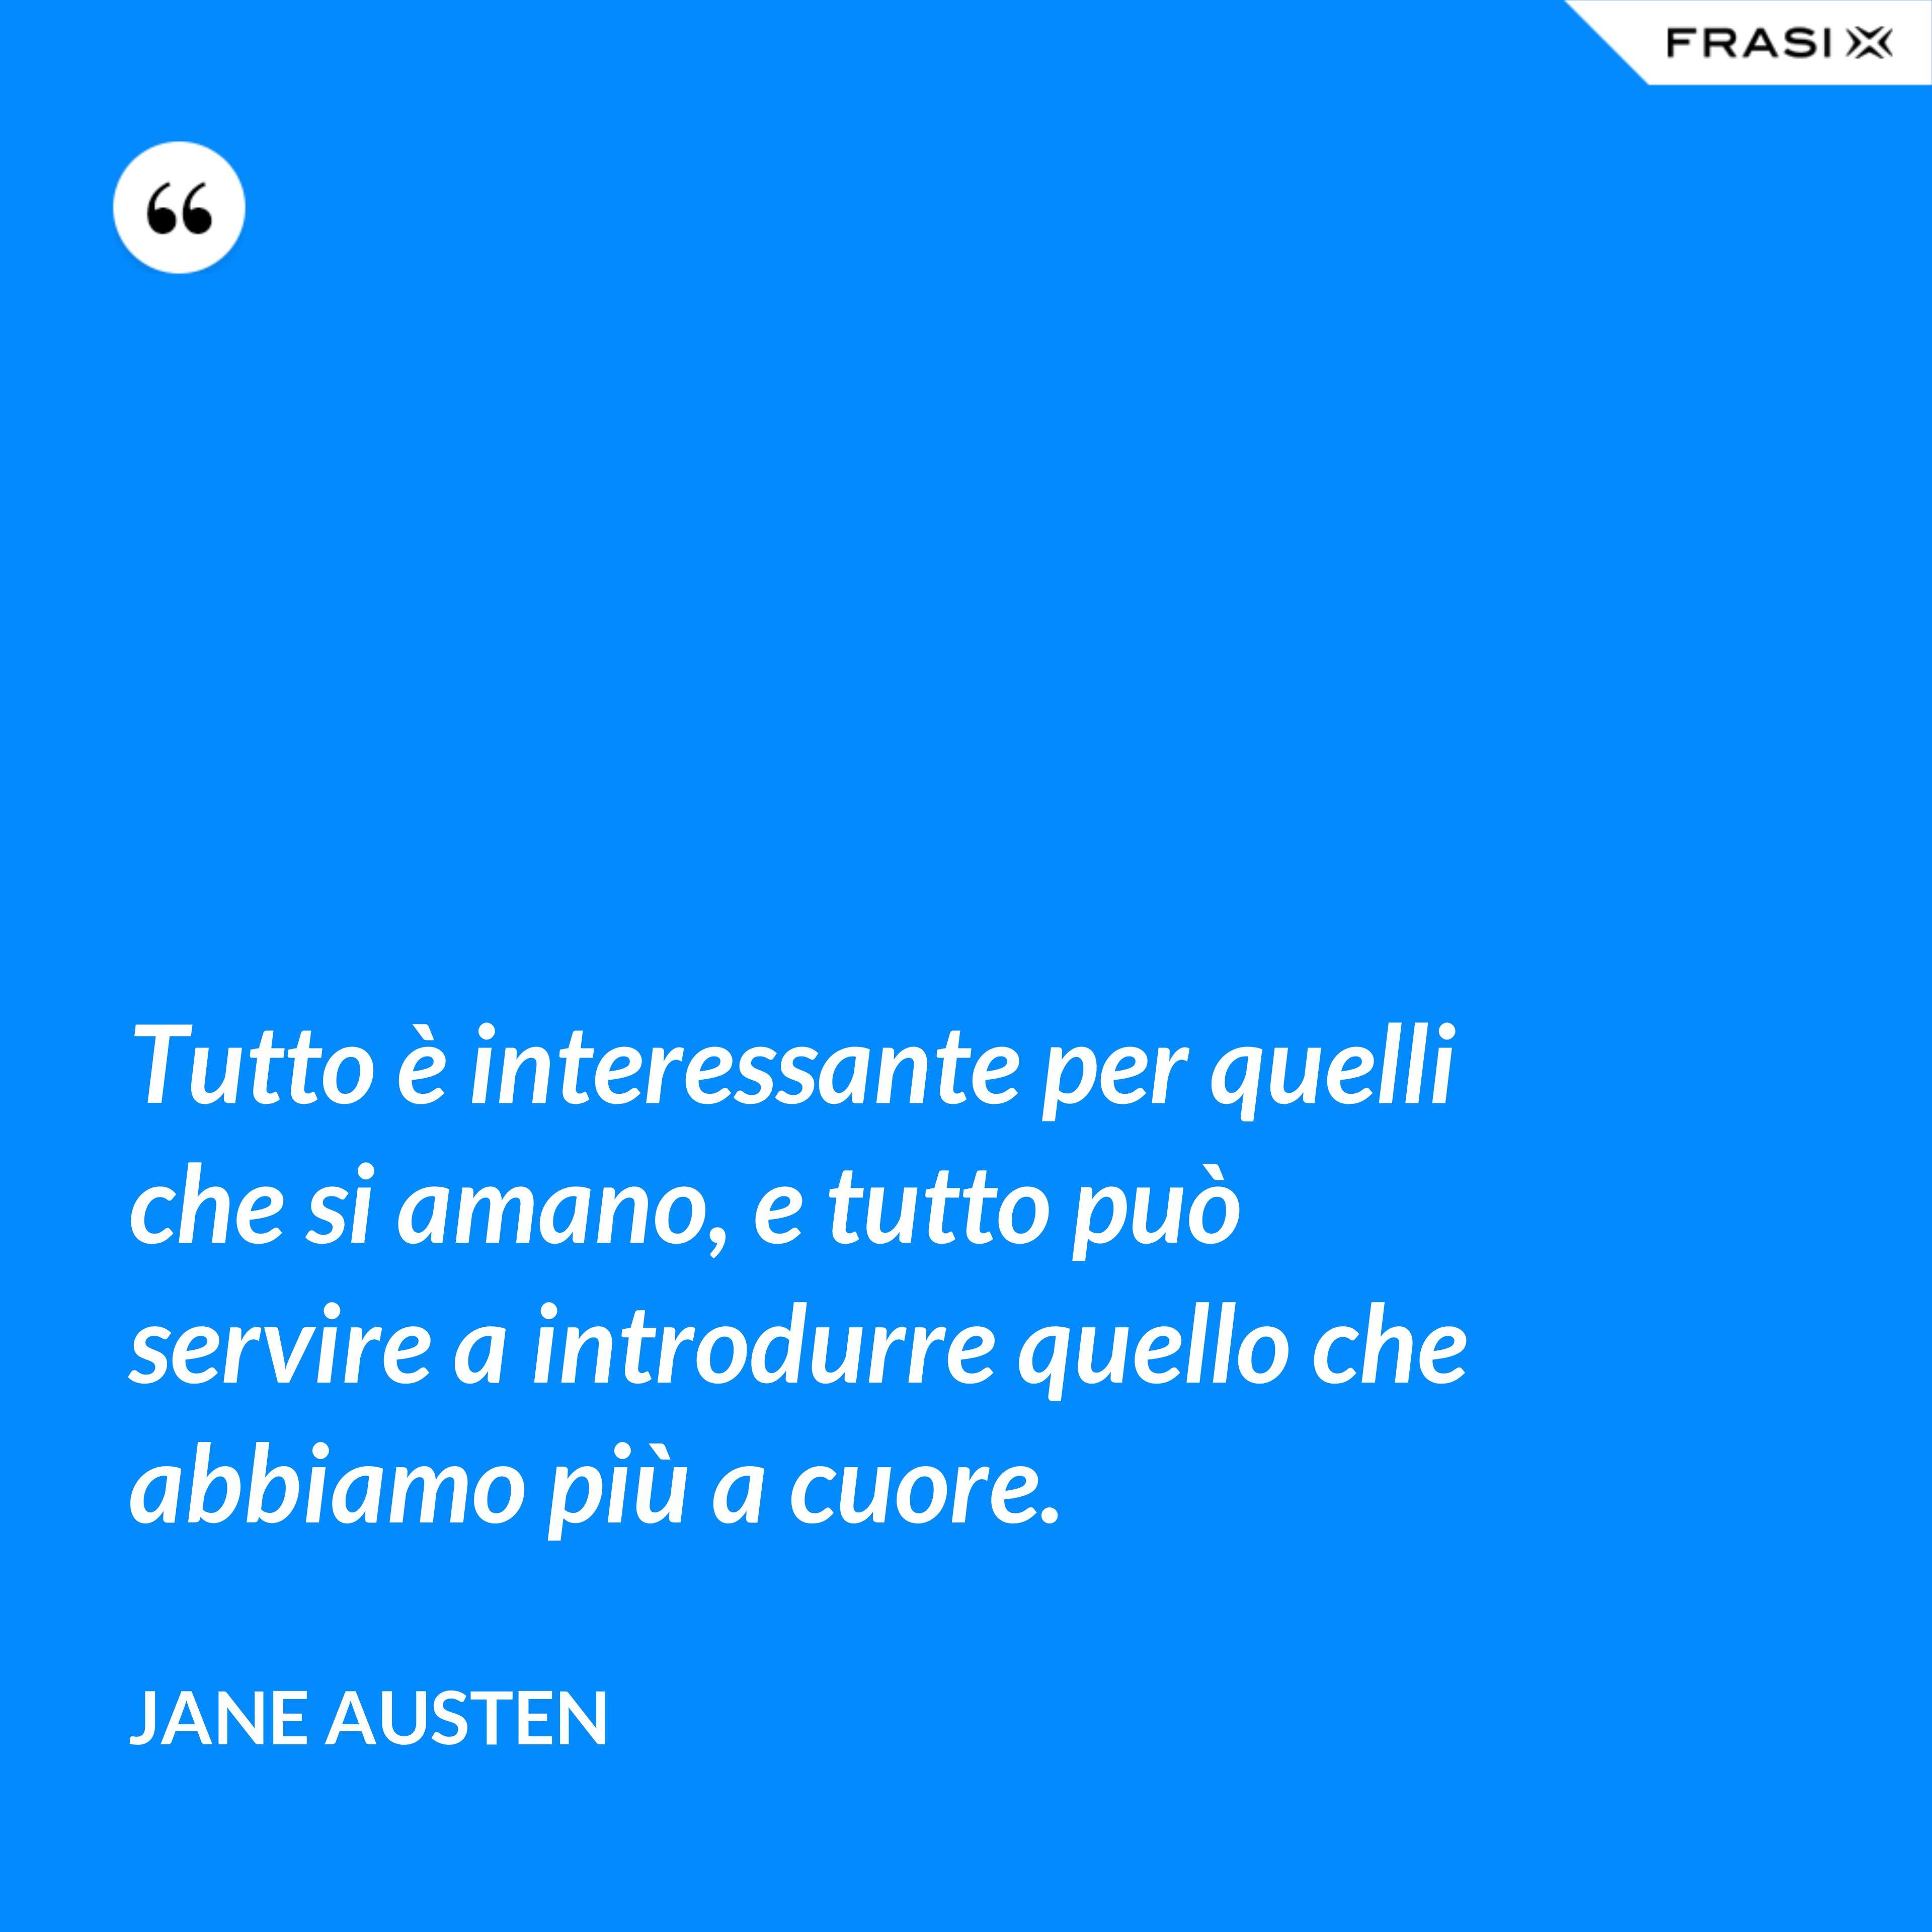 Tutto è interessante per quelli che si amano, e tutto può servire a introdurre quello che abbiamo più a cuore. - Jane Austen